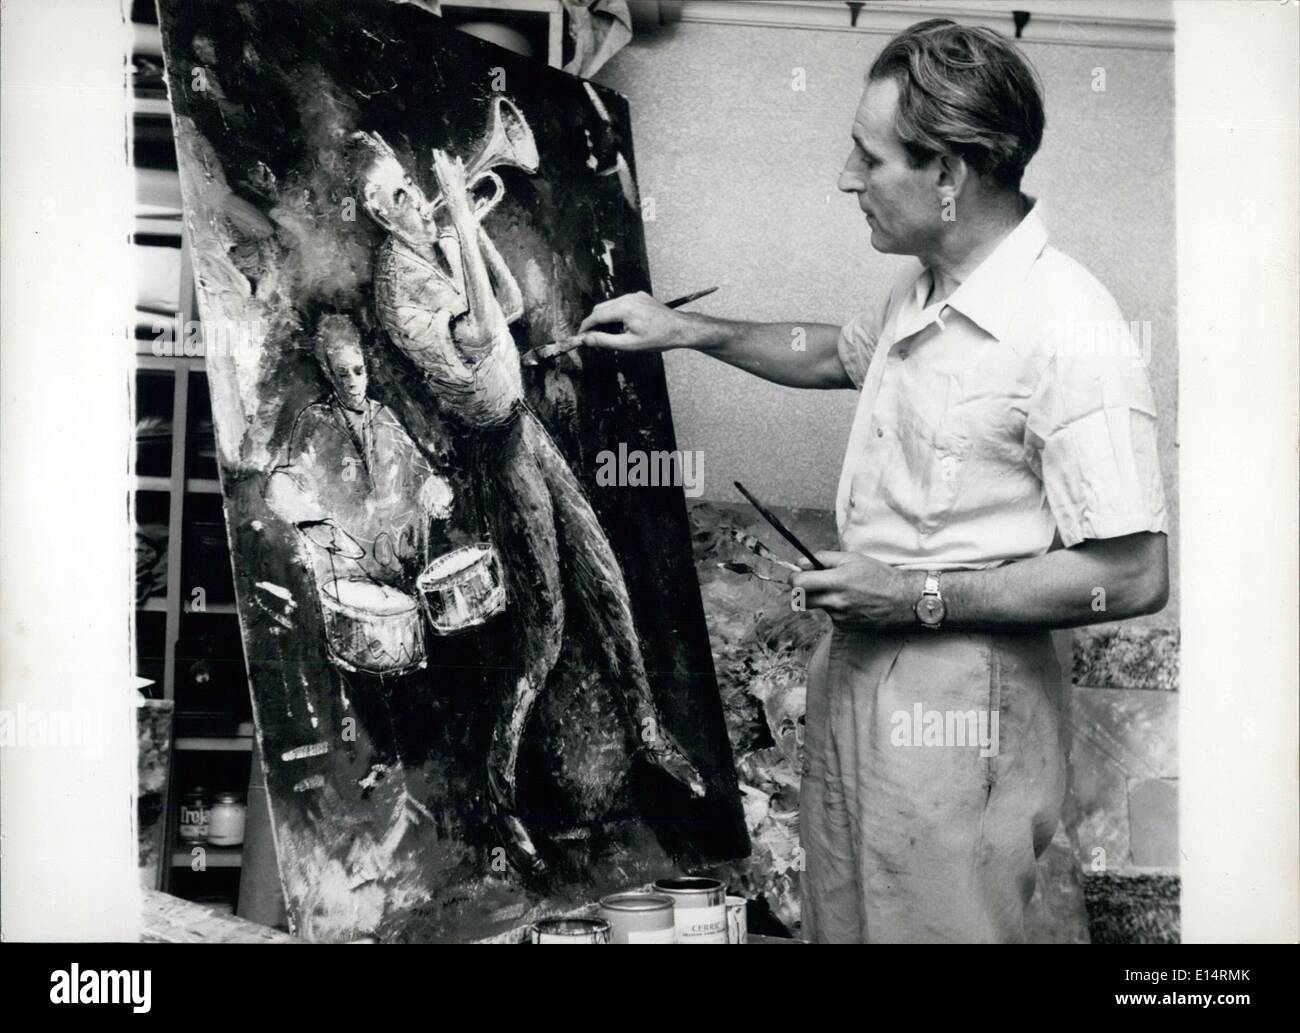 18 avril 2012 - Artiste au travail : M. Nahn au travail sur une peinture. Banque D'Images